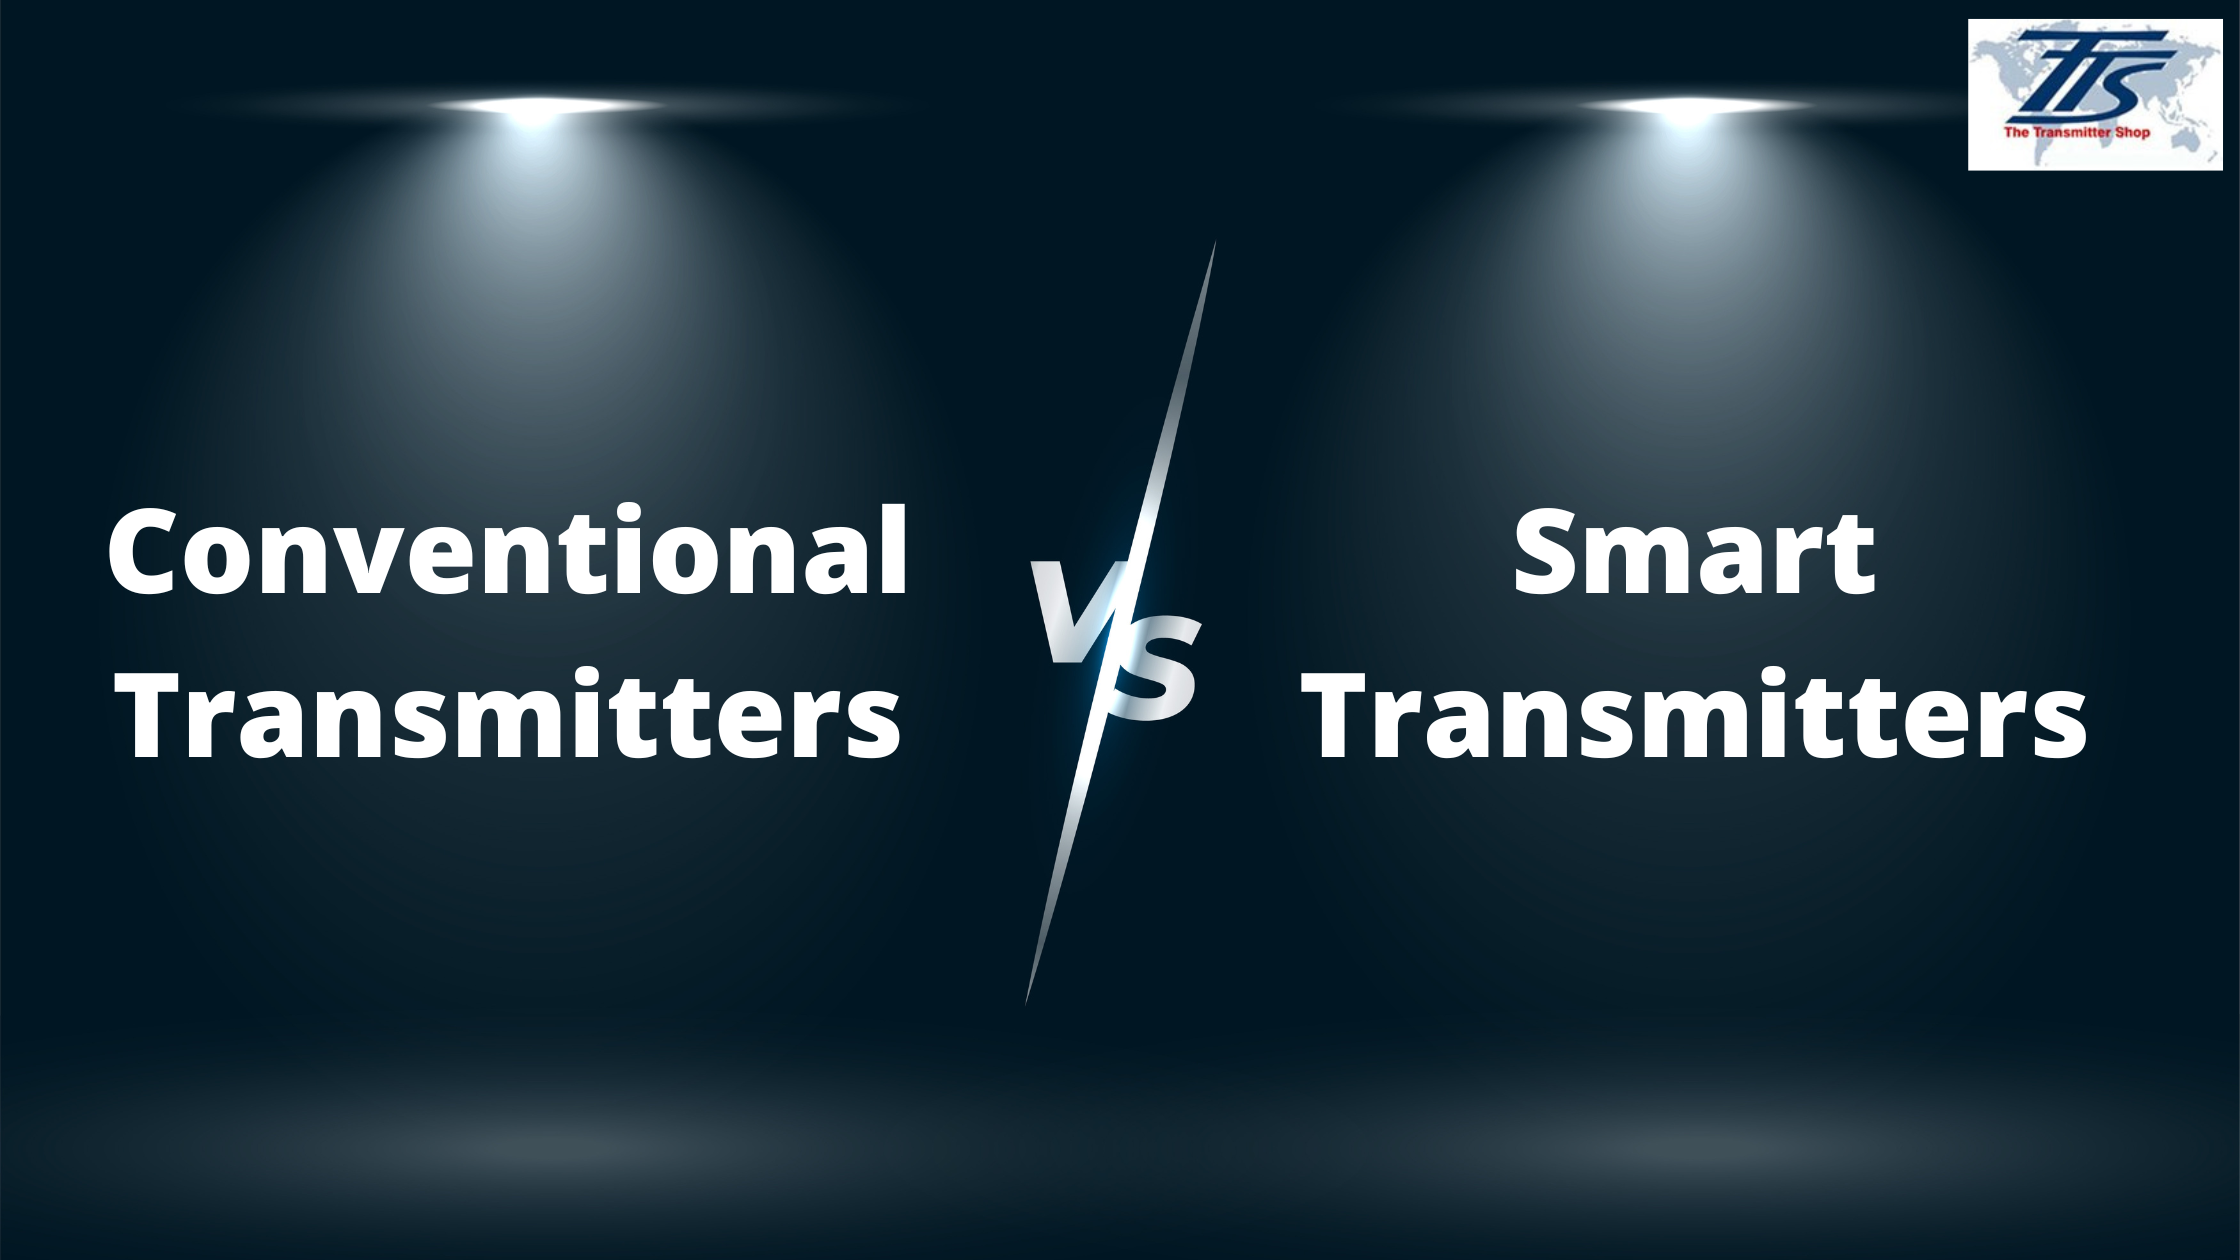 Conventional Transmitter vs Smart Transmitter